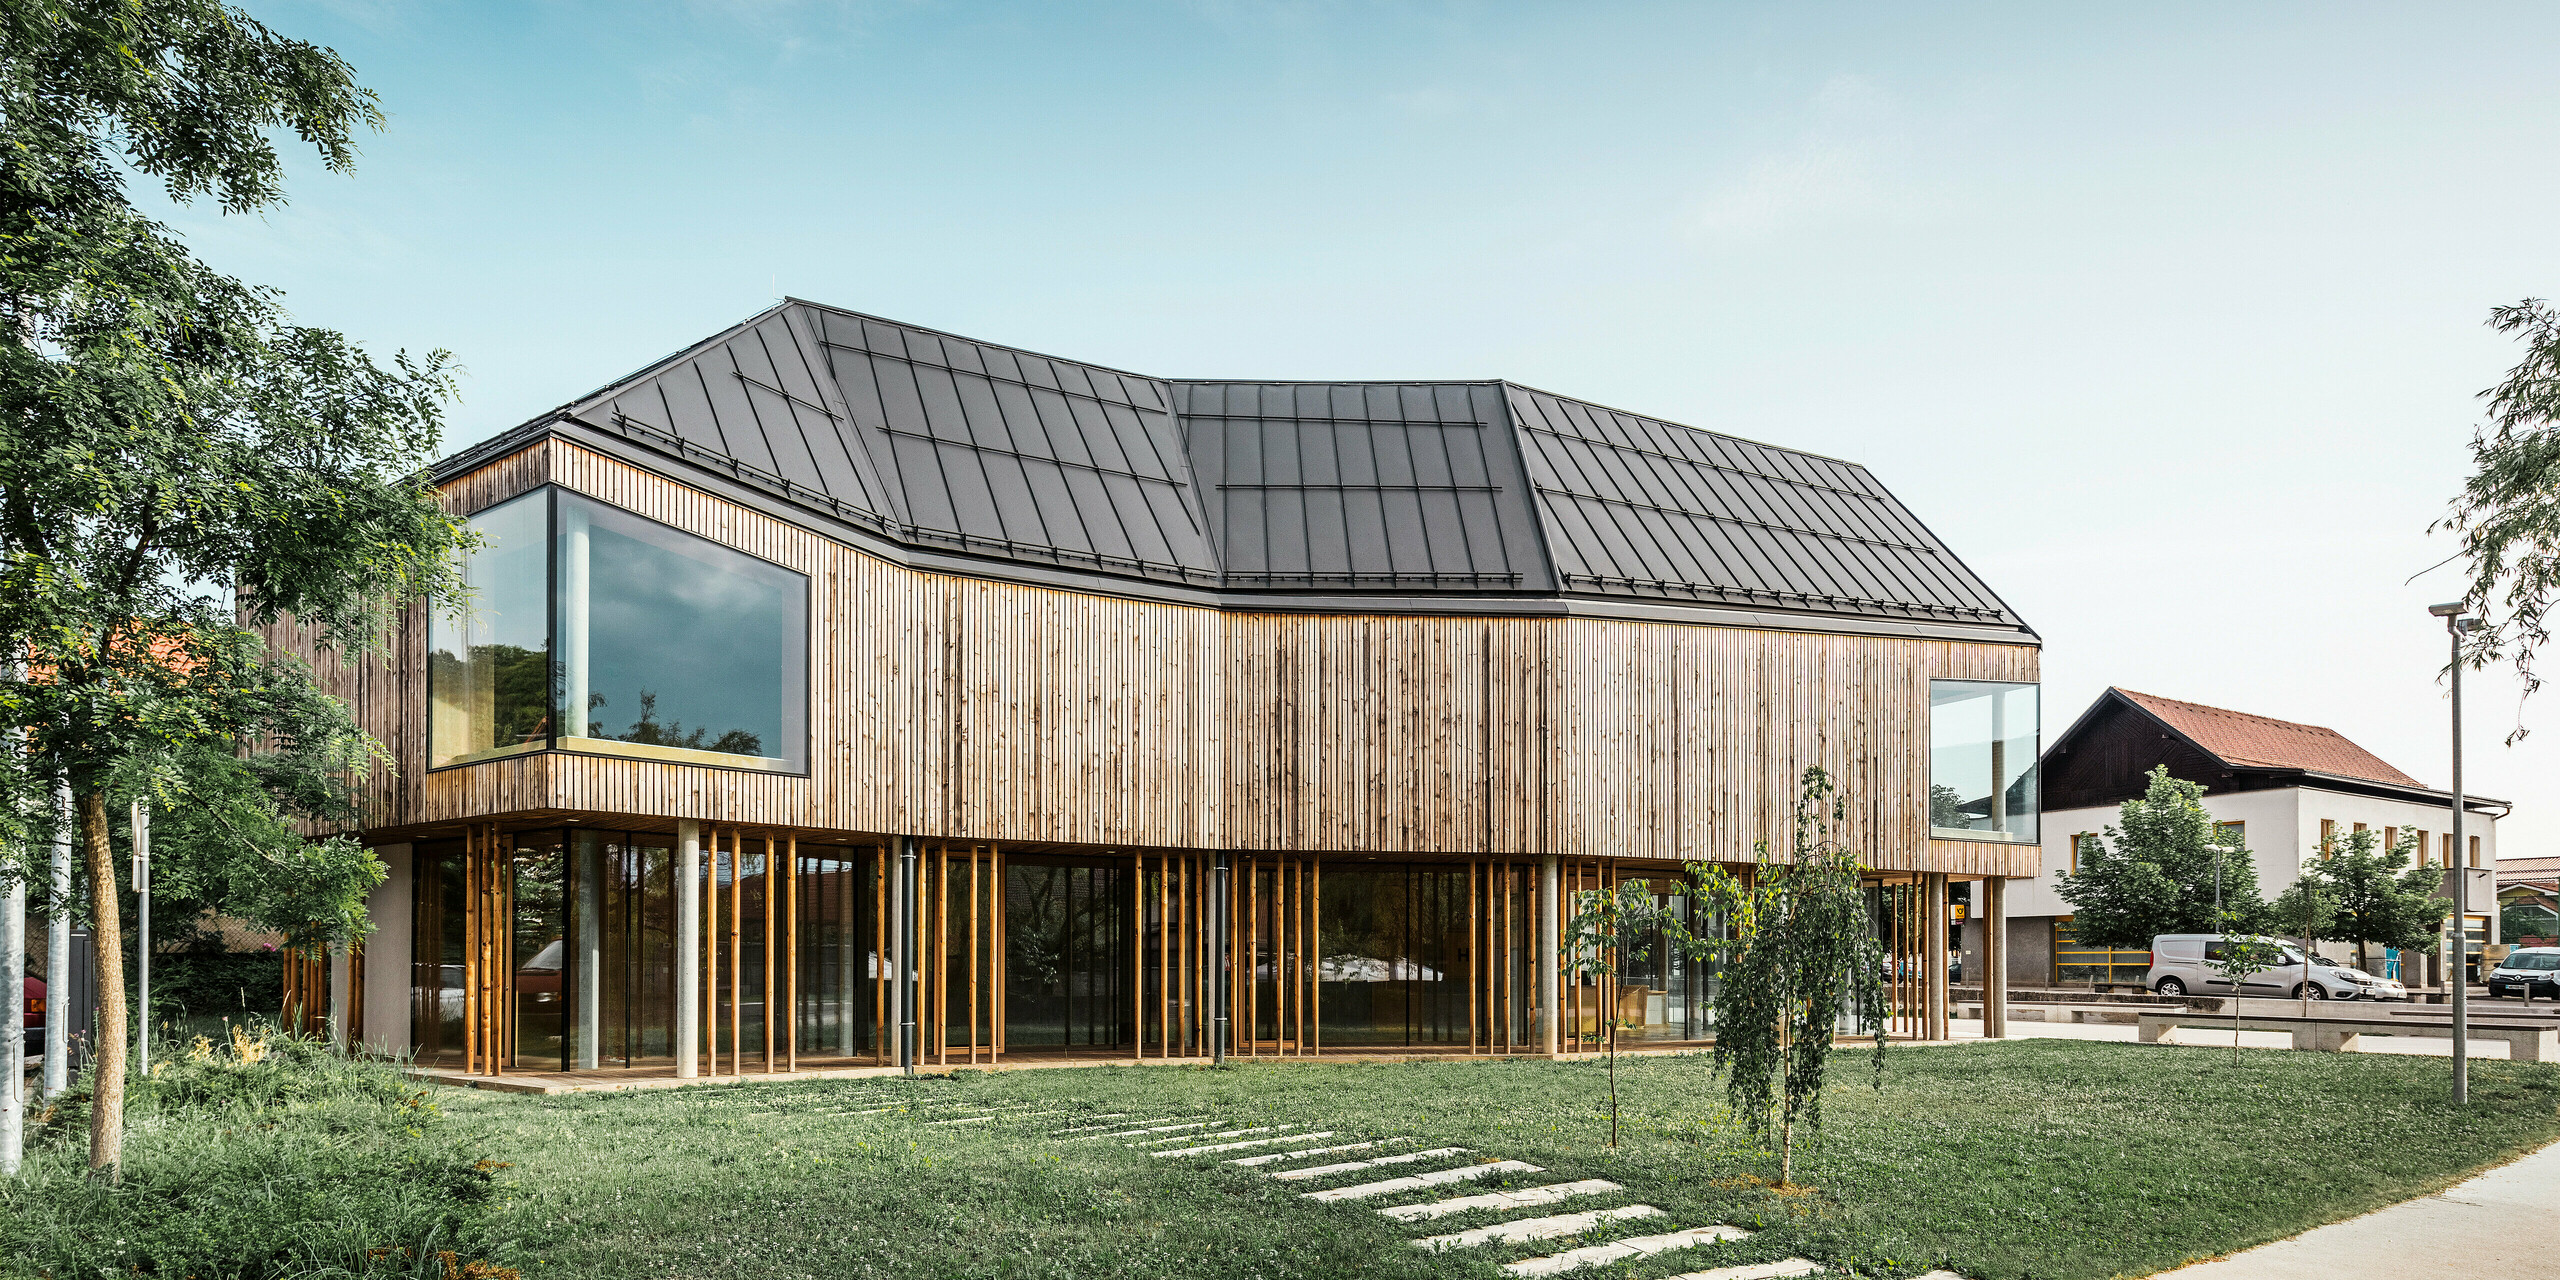 Pogled s strani na ekološko zasnovan center za obiskovalce na Igu v Sloveniji s streho PREFALZ v P.10 temno sivi barvi, ki se harmonično zliva s podeželskim okoljem. Navpična lesena obloga in obsežna zasteklitev poudarjata odprto in pregledno arhitekturo, medtem ko okoliška vegetacija in jasno nebo poudarjata naravno estetiko lokacije. Ta objekt ponazarja prispevek podjetja PREFA Aluminiumprodukte GmbH k sodobni in okolju prijazni arhitekturi, kot je prikazano v knjigi PREFARENZEN 2023.